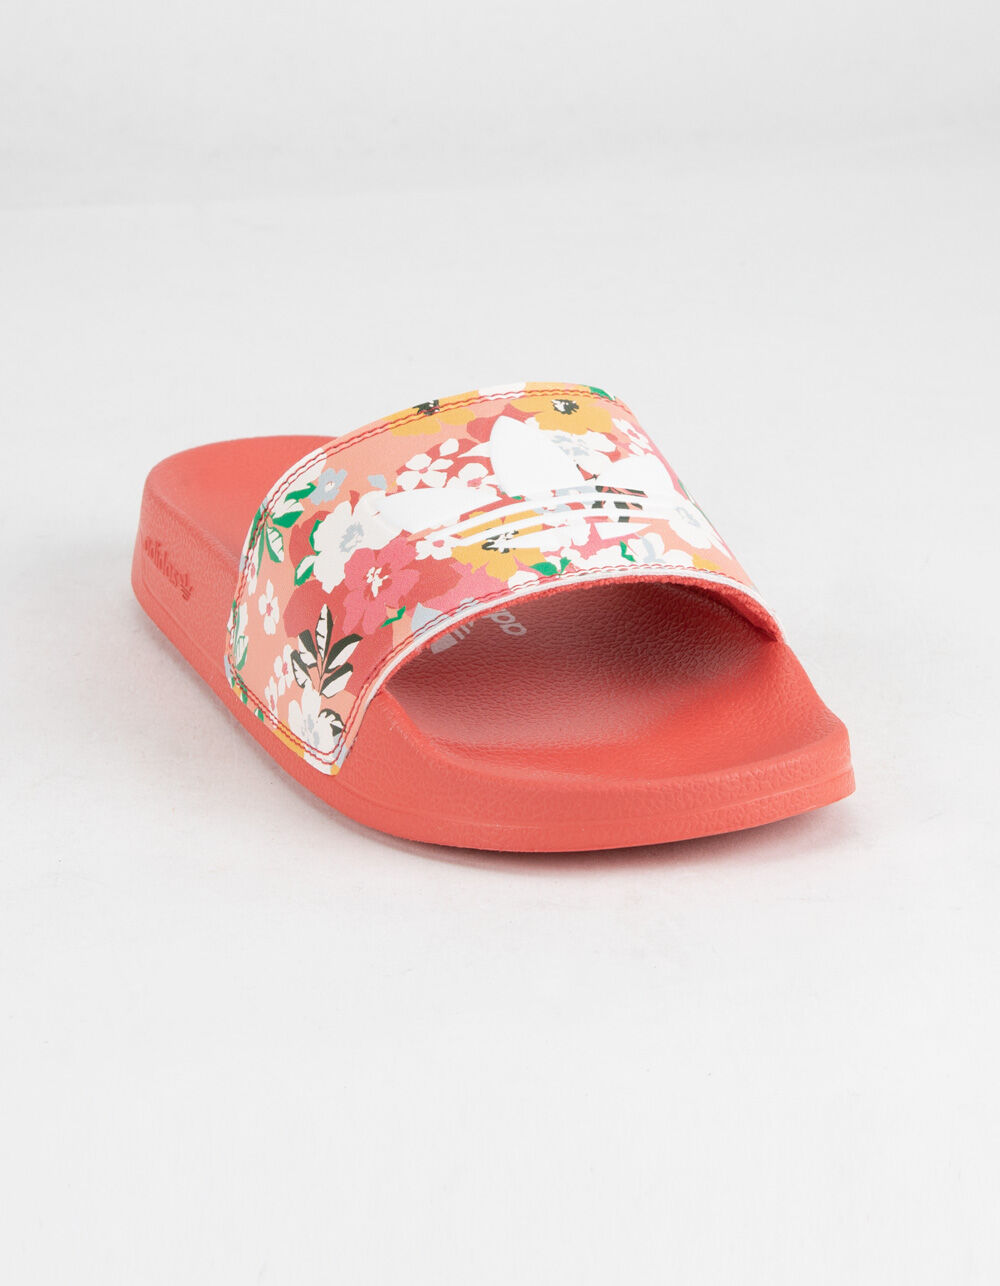 ADIDAS Adilette Lite Floral Girls Slide Sandals - PINK | Tillys